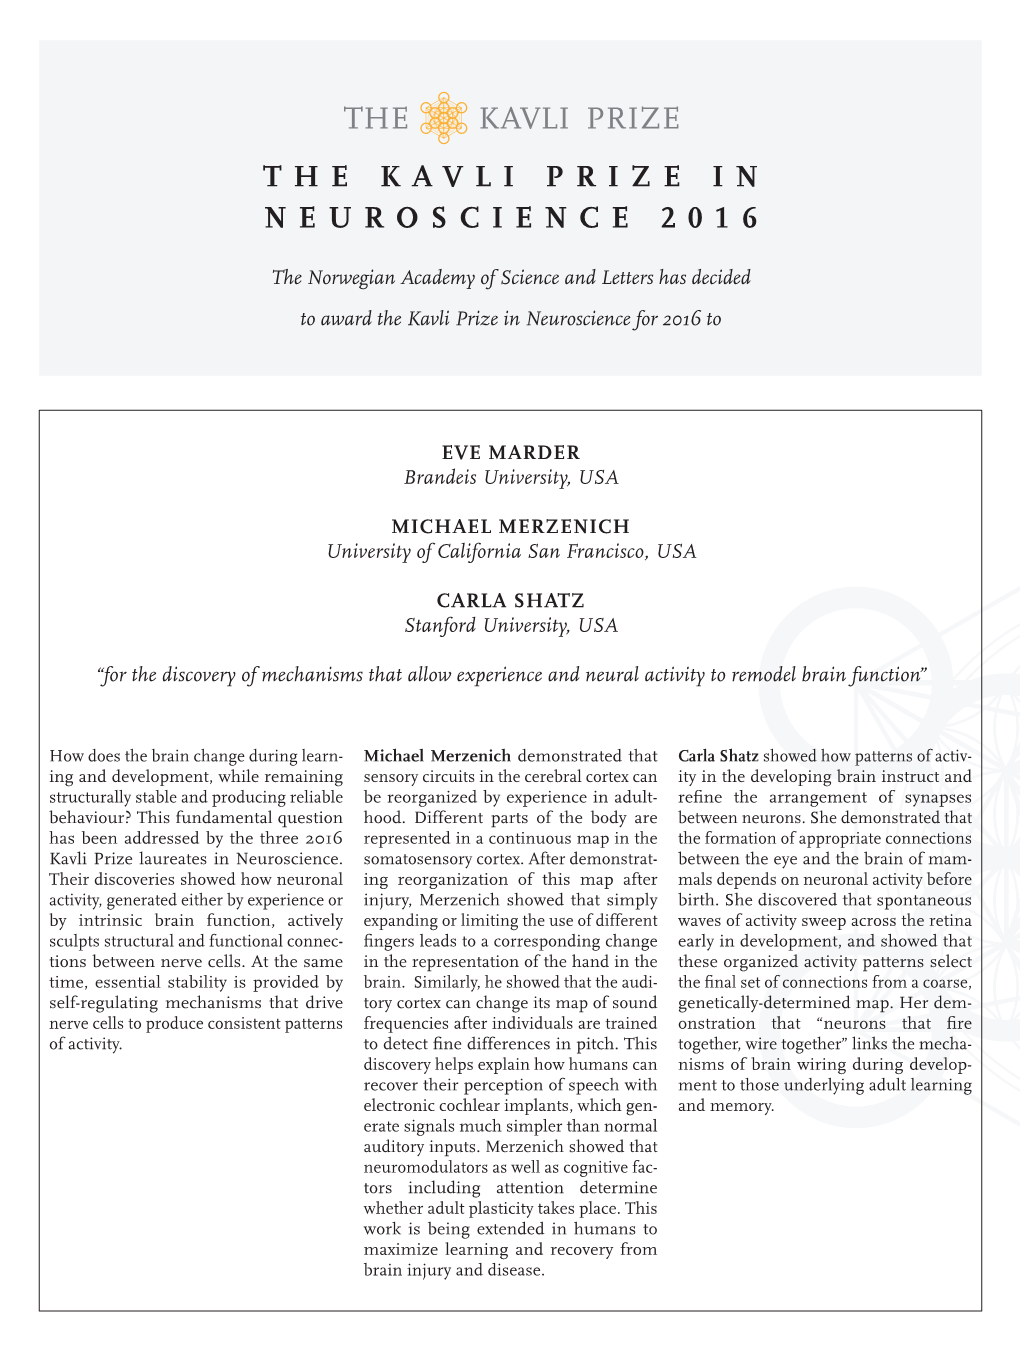 The Kavli Prize in Neuroscience 2016